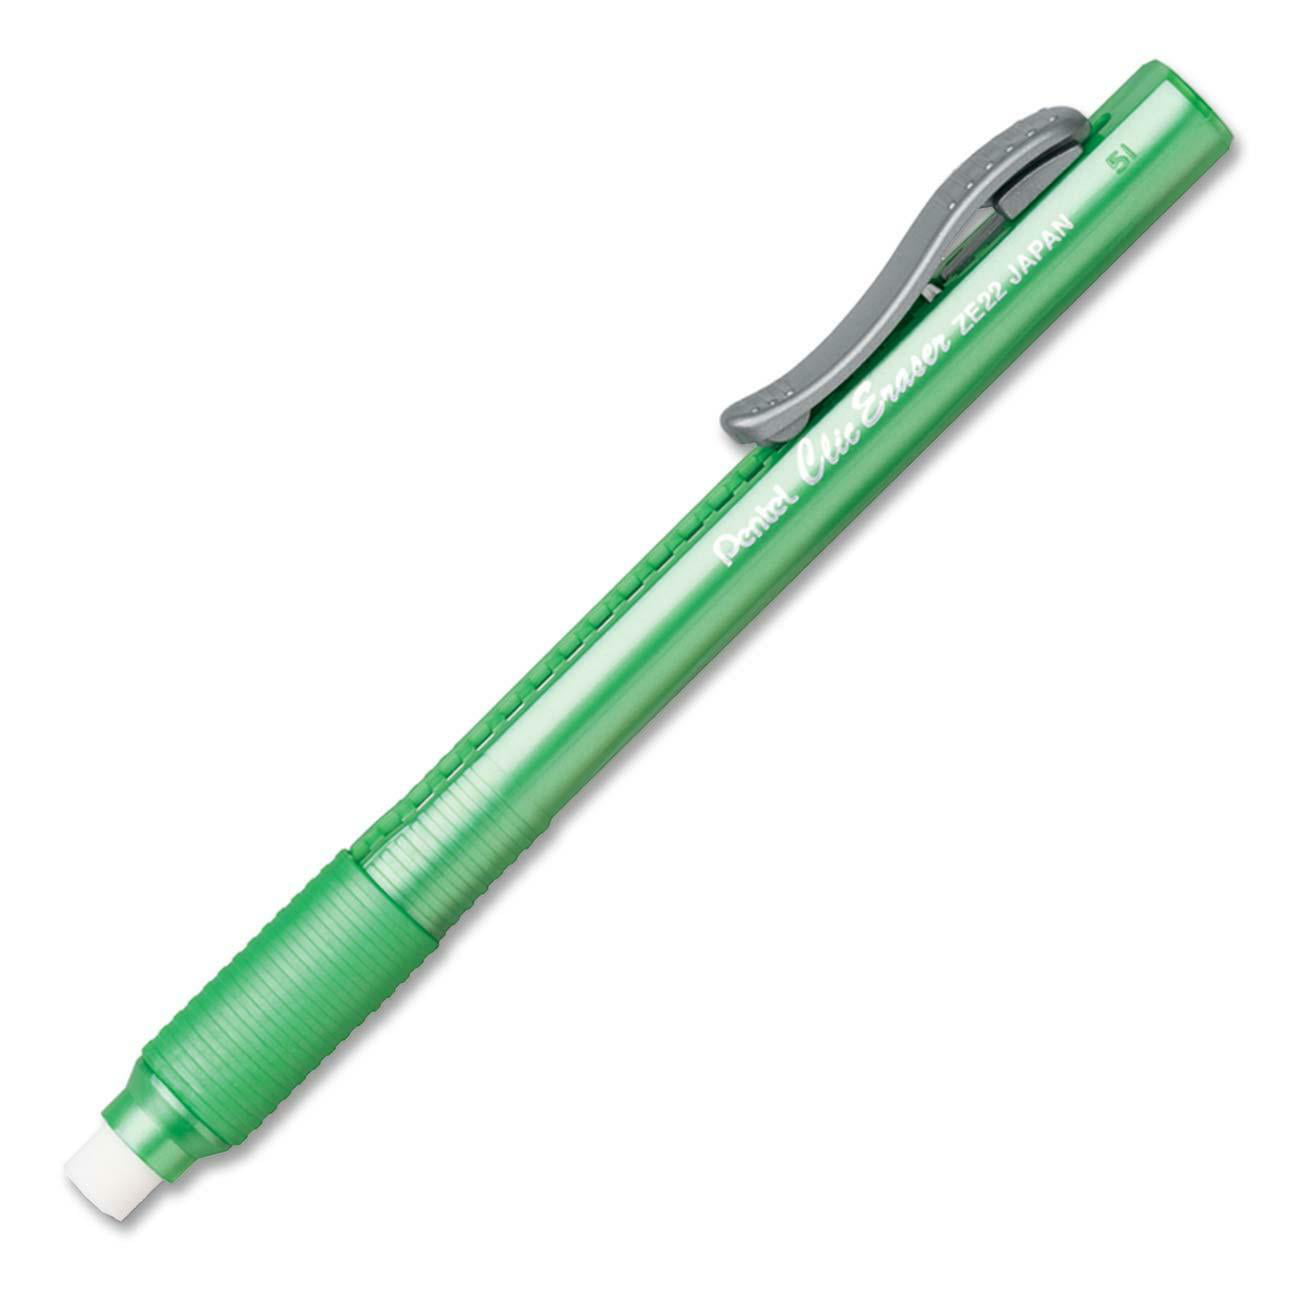 artrage 5 stuck on eraser on pen only